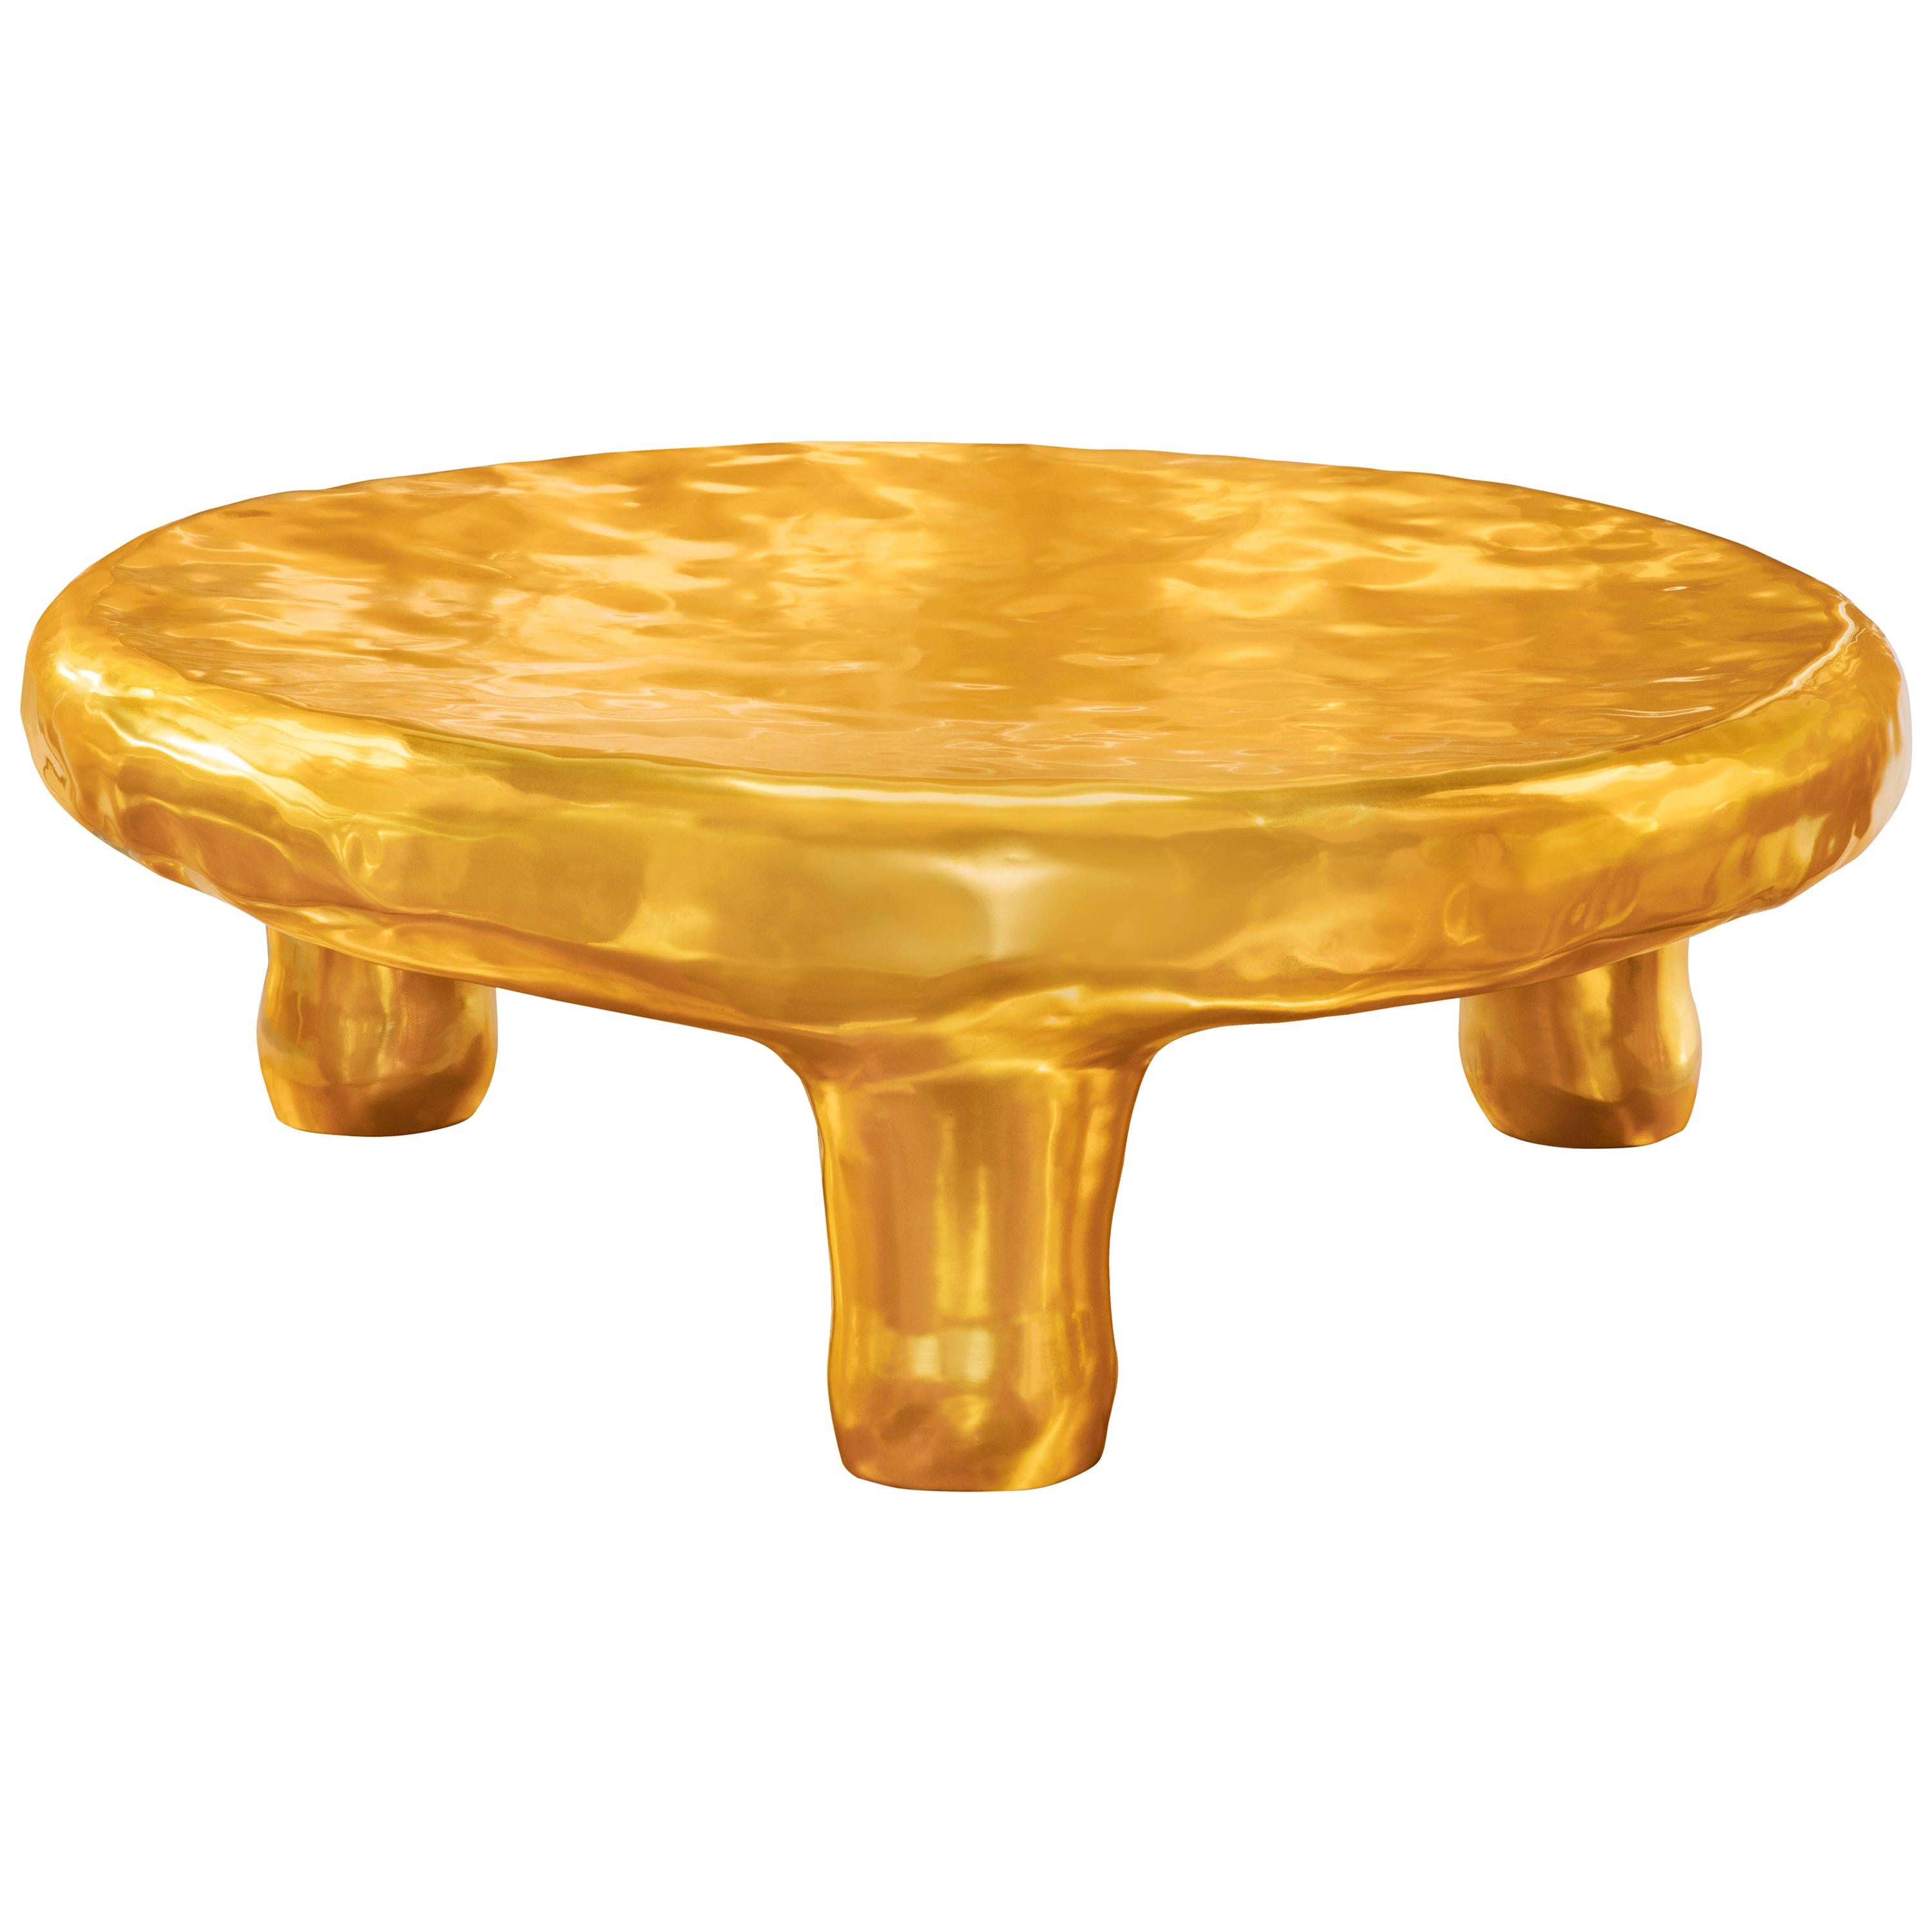 Delight Coffee Table in Brass by Scarlet Splendour